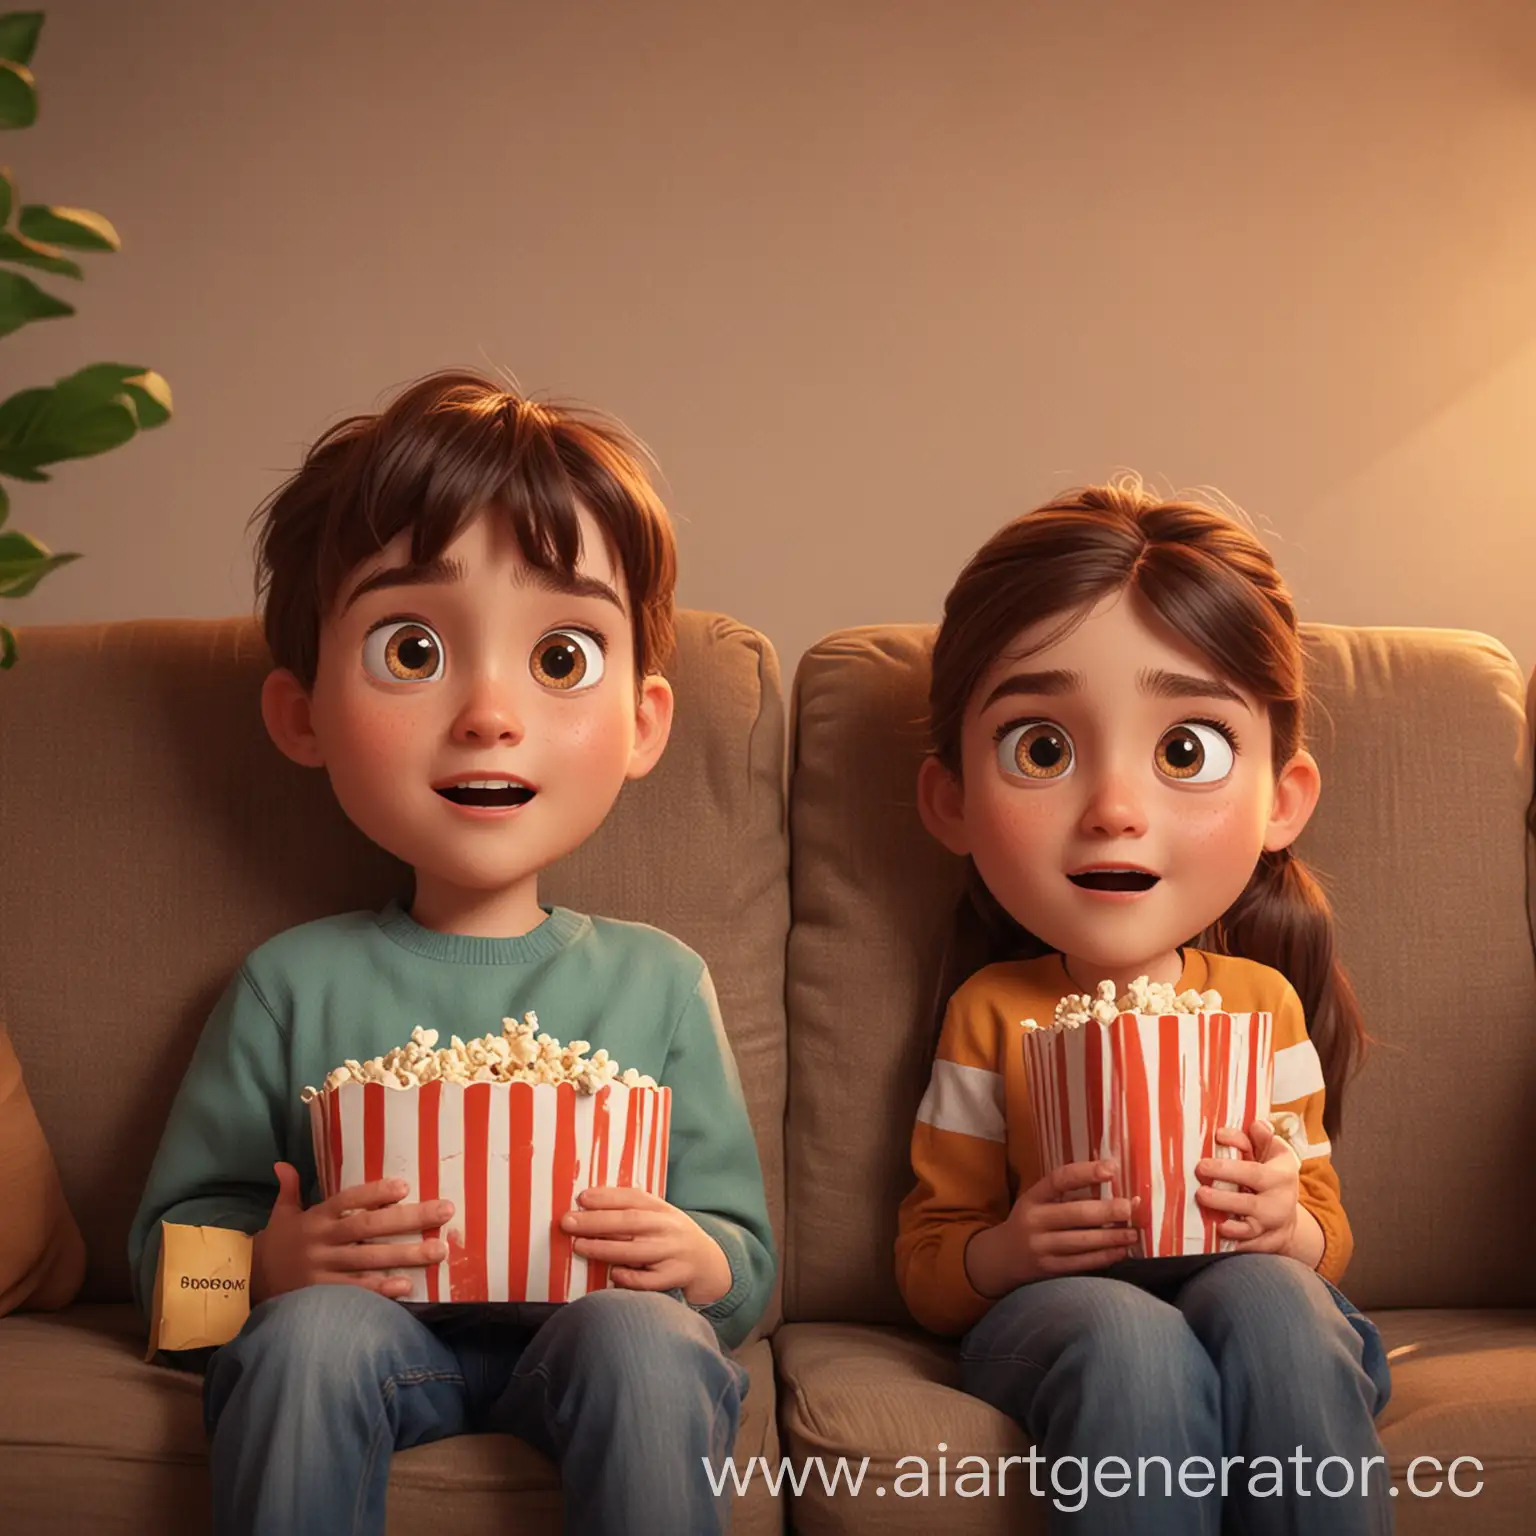 Девушка и парень смотрят кино на диване. В руках держат поп-корн. Изображение в анимационном стиле.